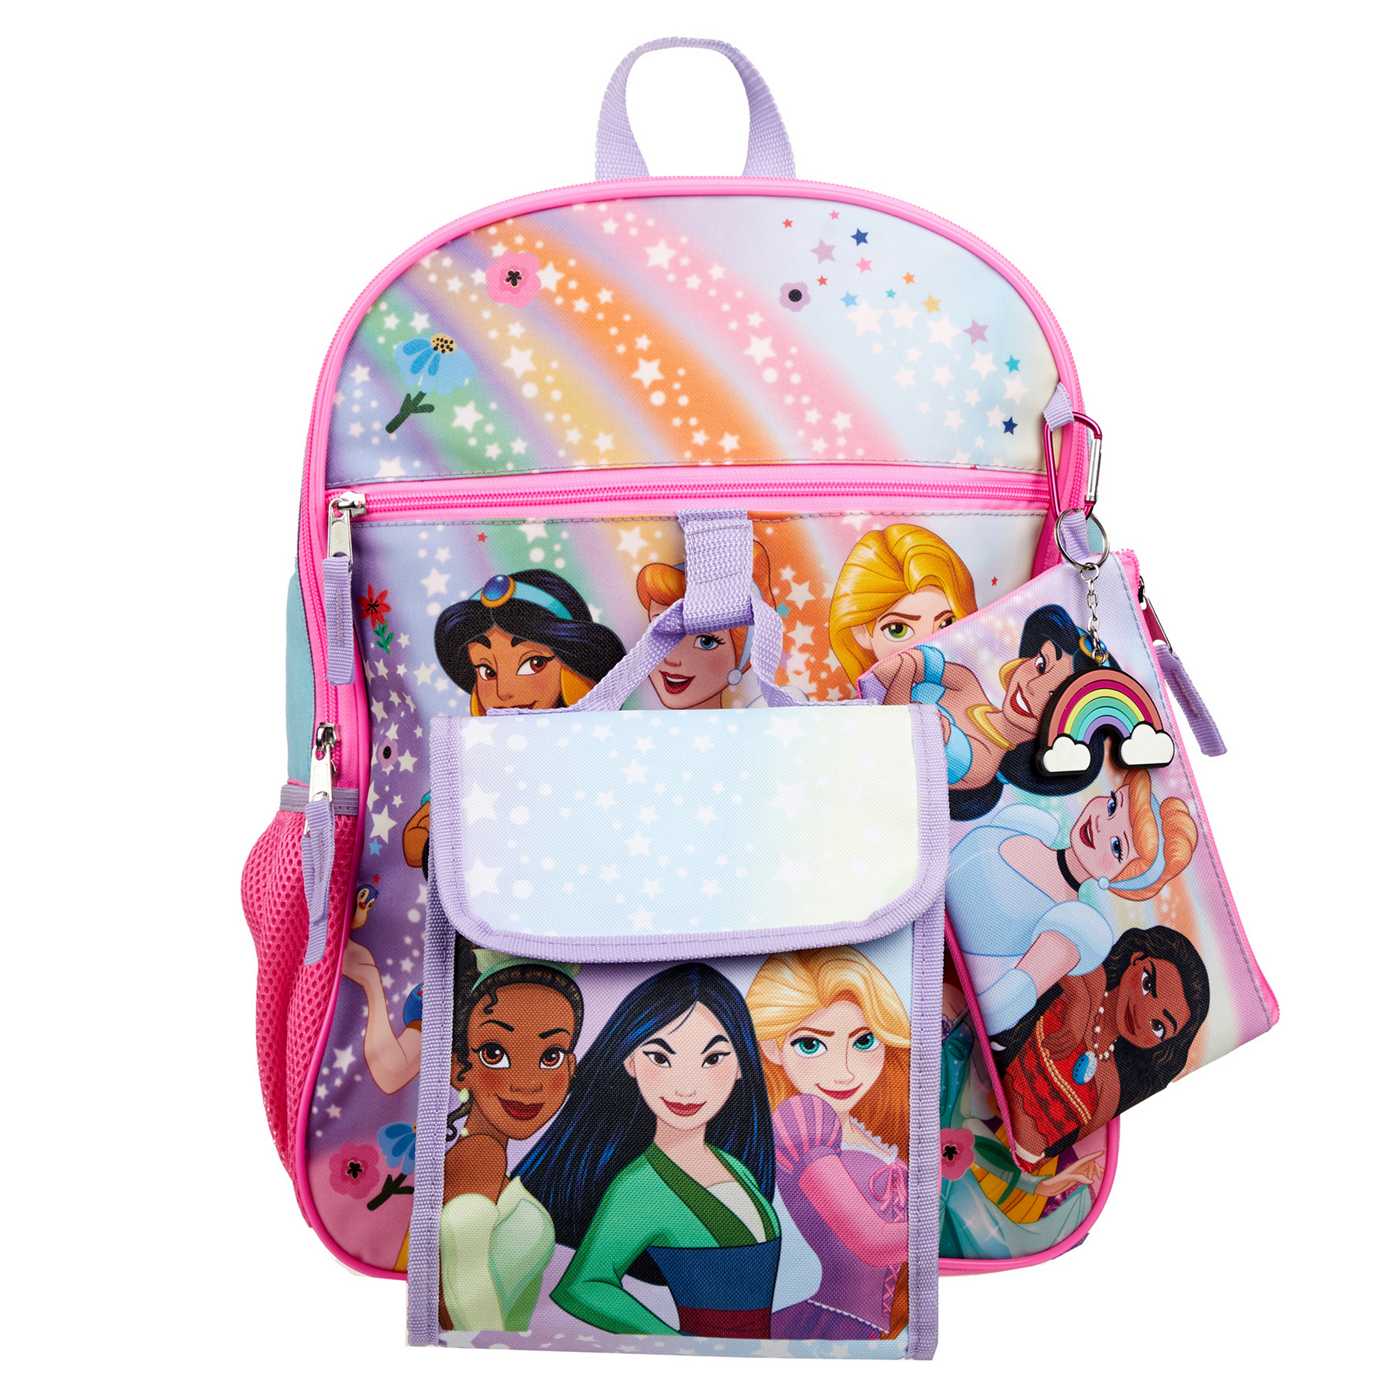 Disney Princess Backpack Set; image 1 of 5